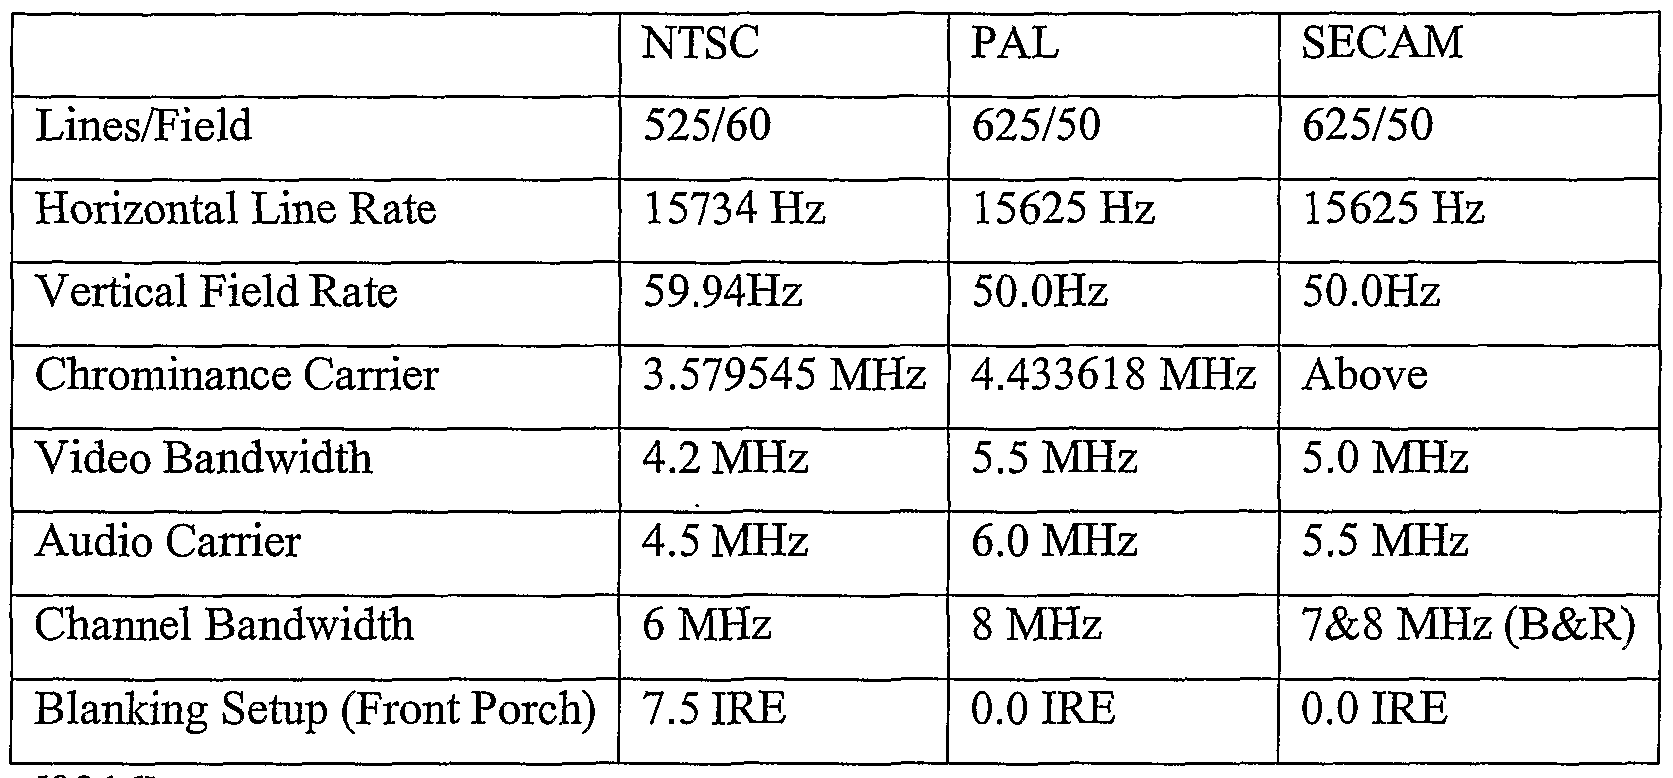 Hệ NTSC là gì? Hệ Pal là gì? So sánh giữa NTSC và PAL